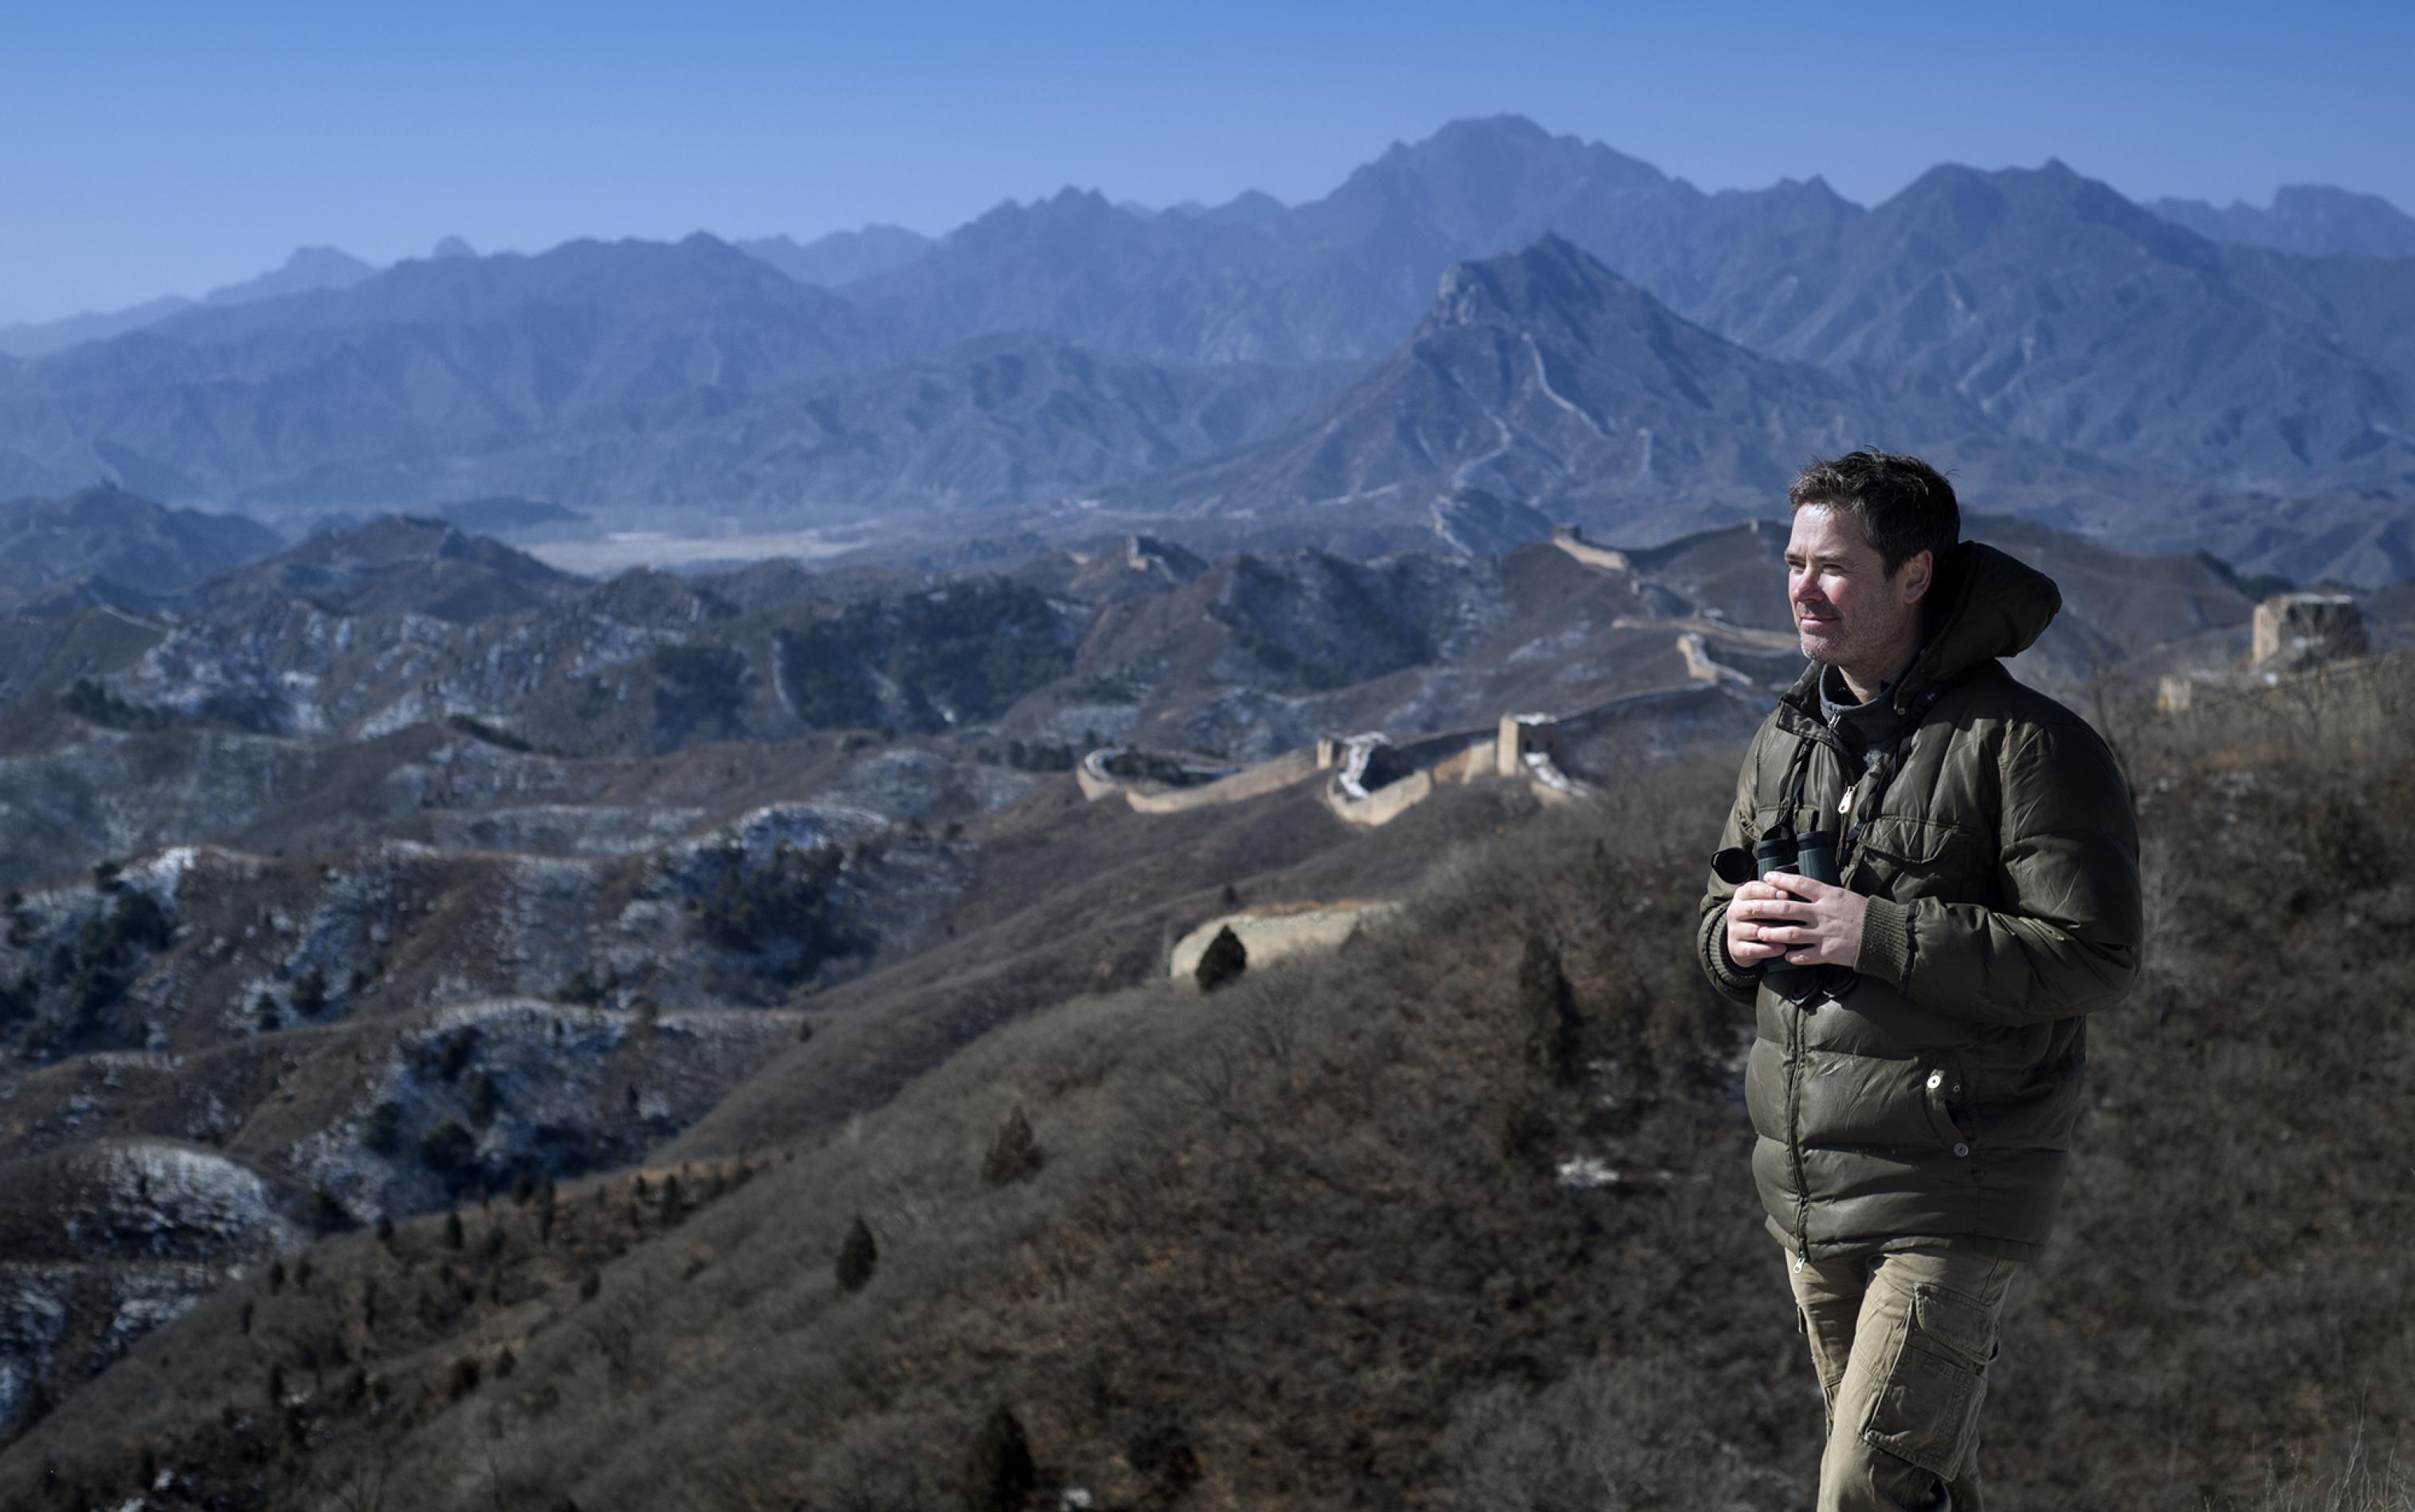 Auf dem Bild ist Terry Townsend, unser Interviewpartner, zu sehen, wie er vor der Großen Mauer in China steht und ein Fernglas in der Hand hält.